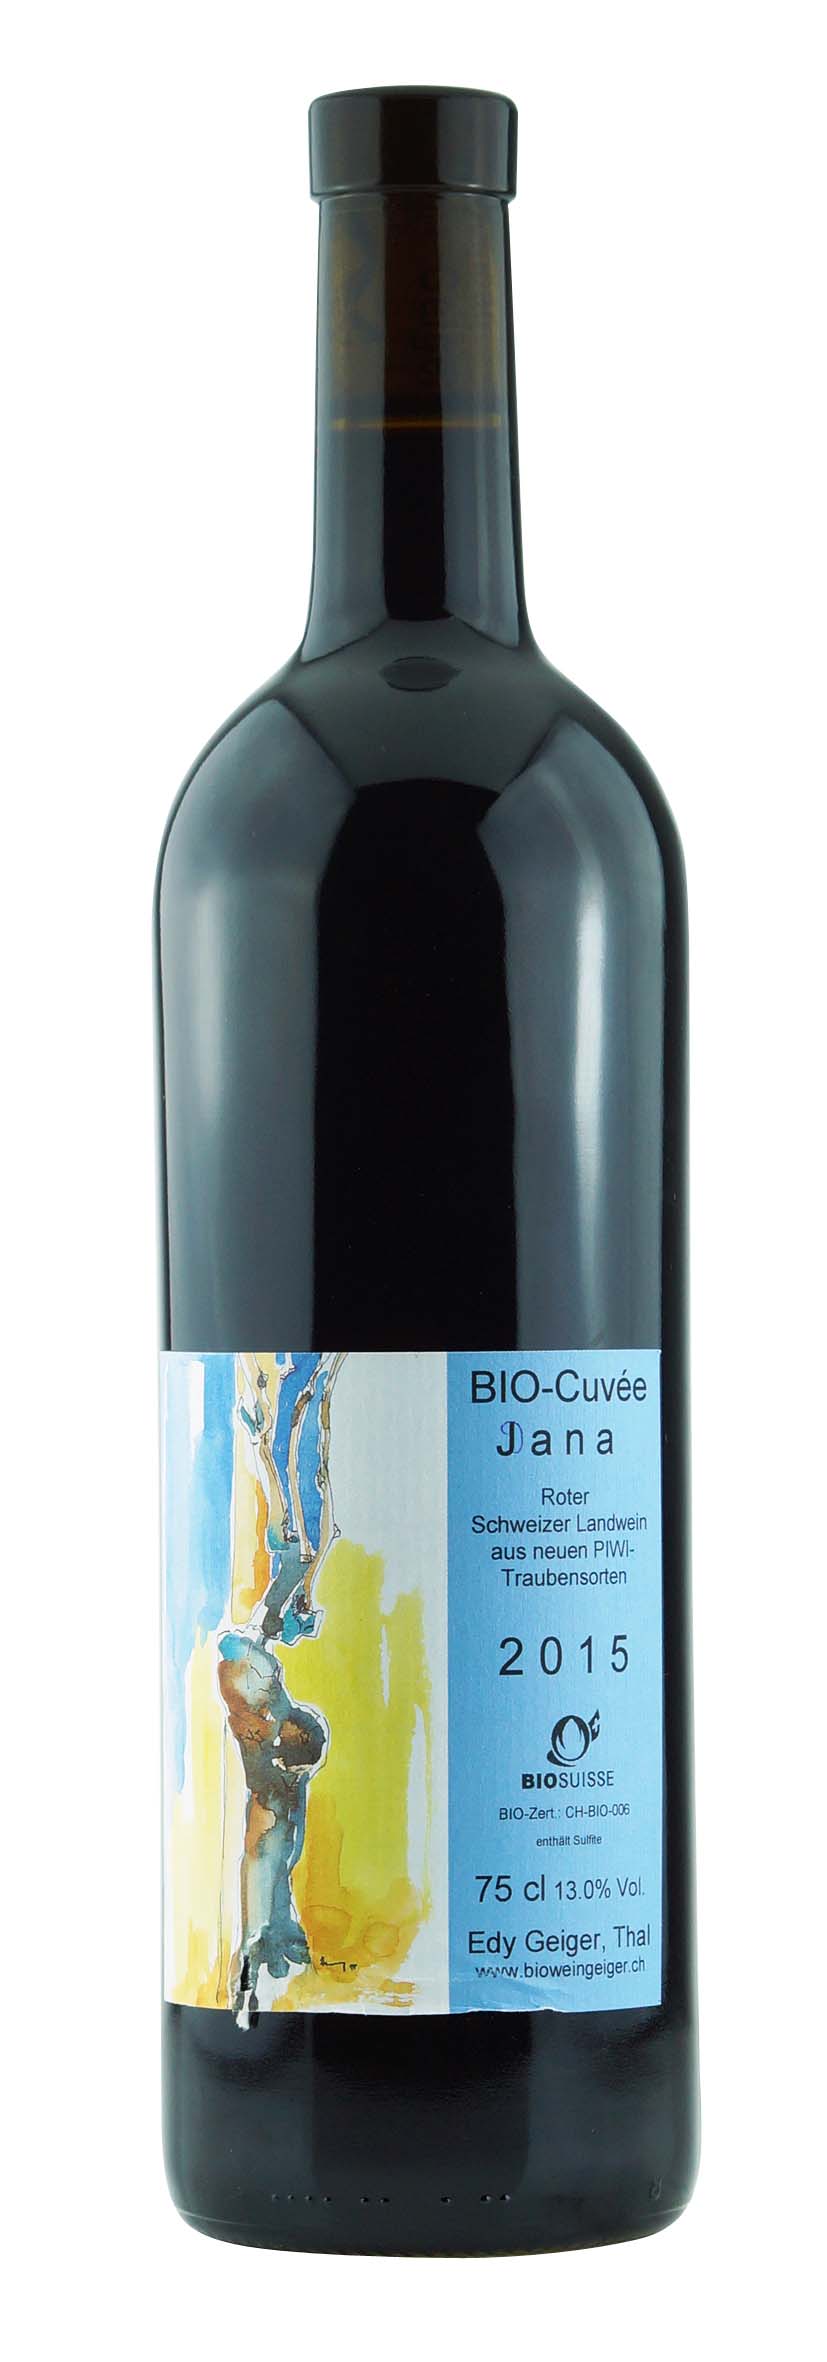 Schweizer Landwein Bio-Cuvée Jana 2015